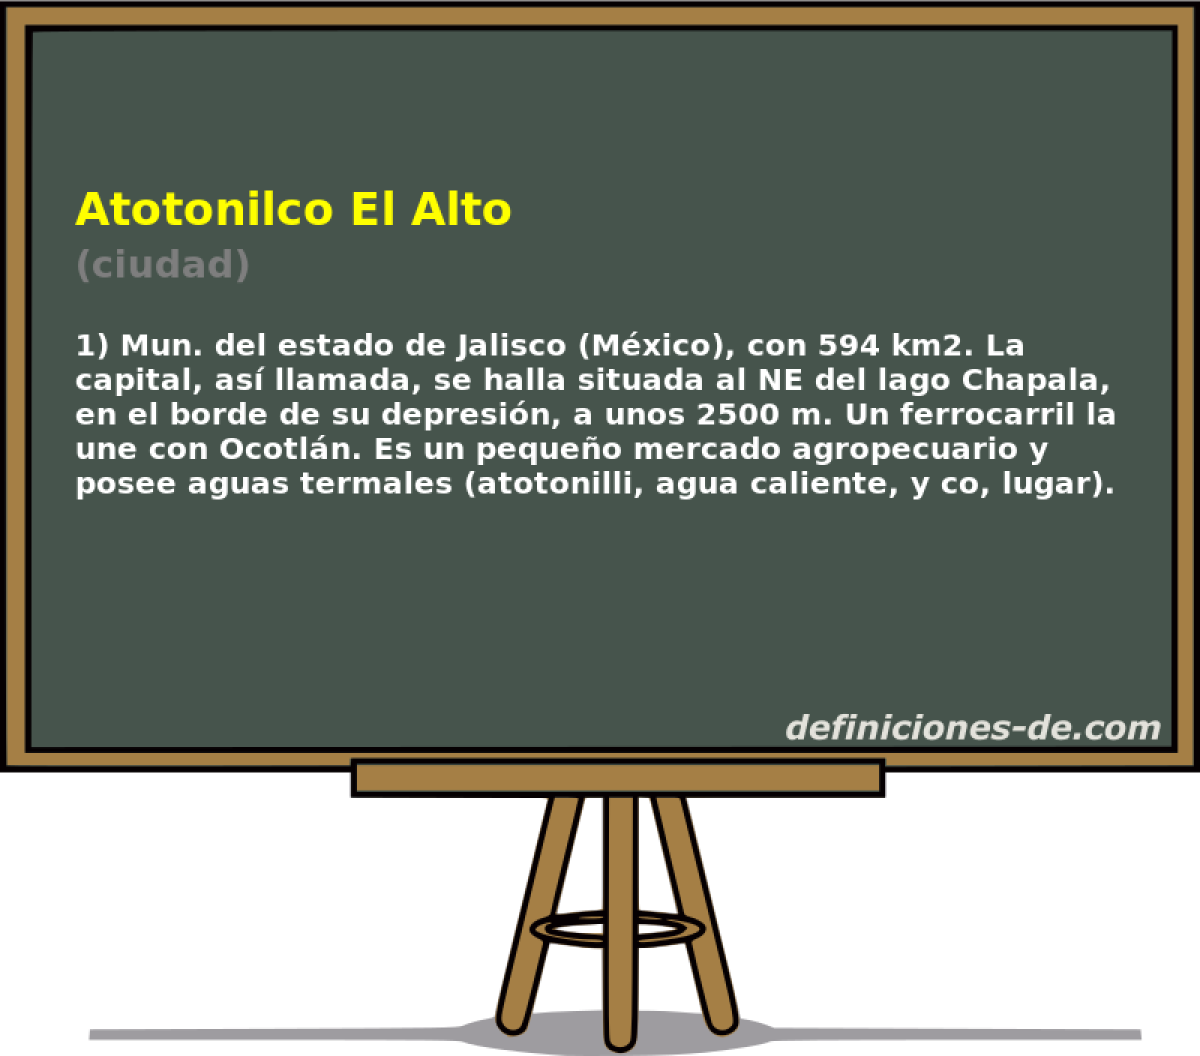 Atotonilco El Alto (ciudad)